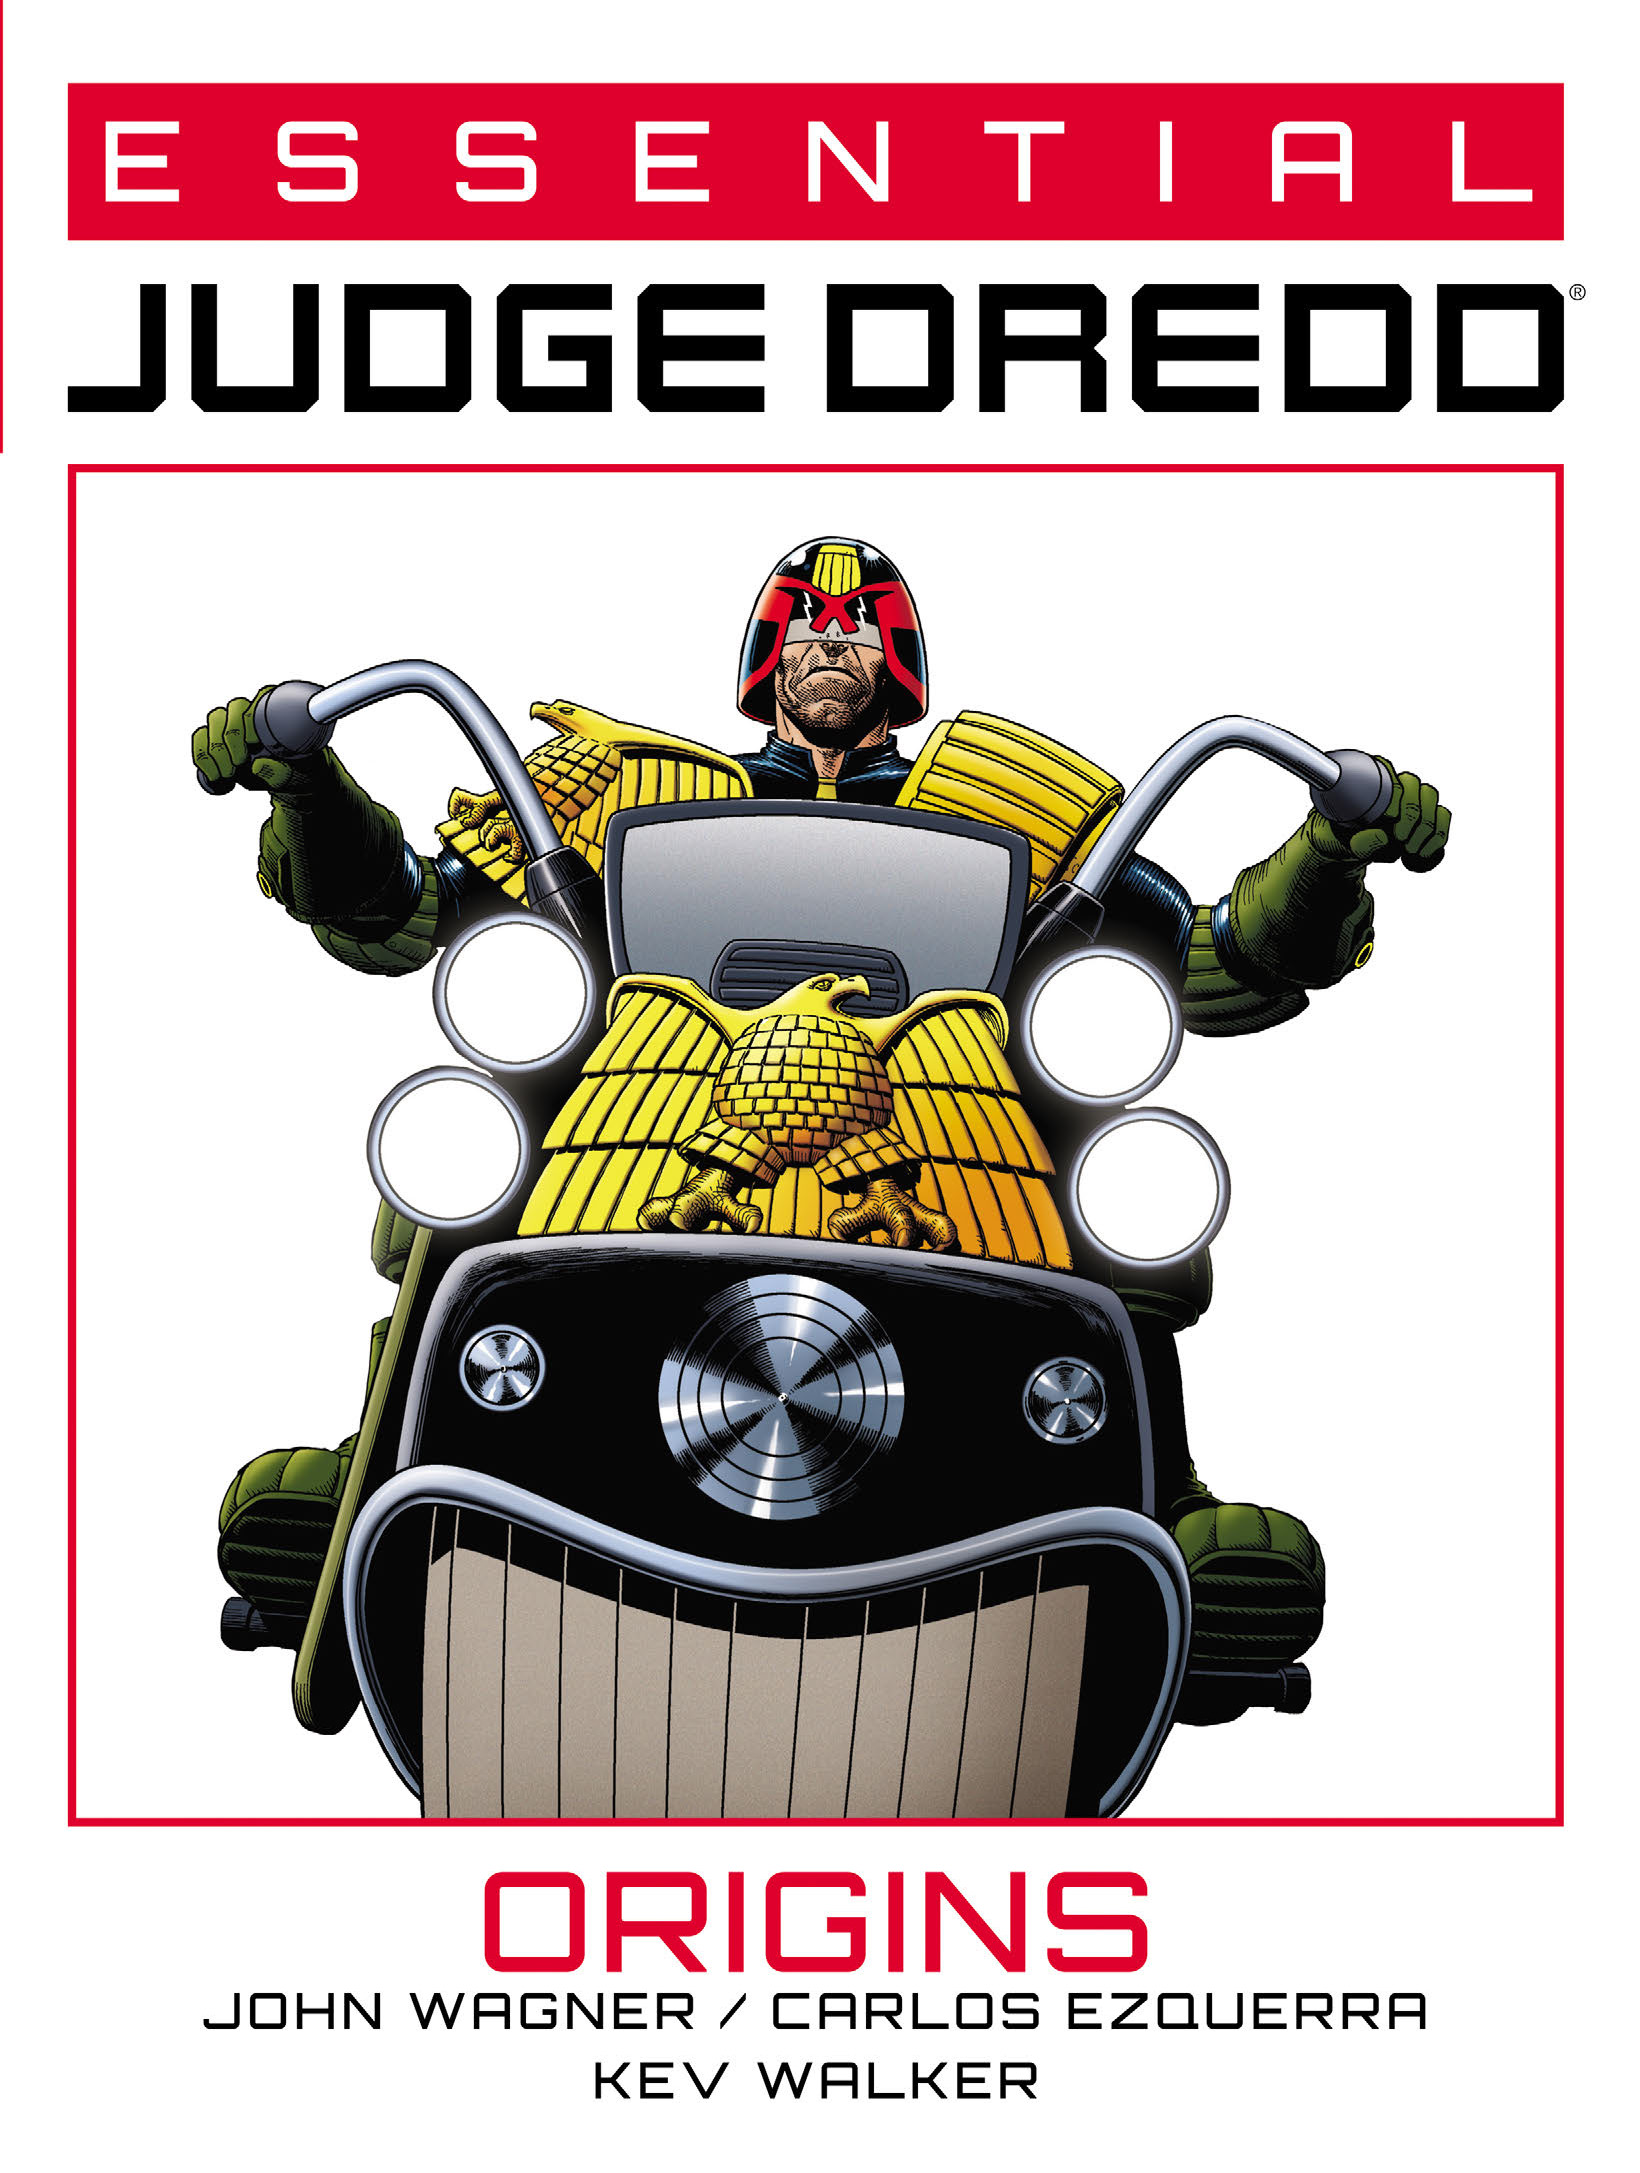 Read online Essential Judge Dredd: Origins comic -  Issue # TPB (Part 1) - 1